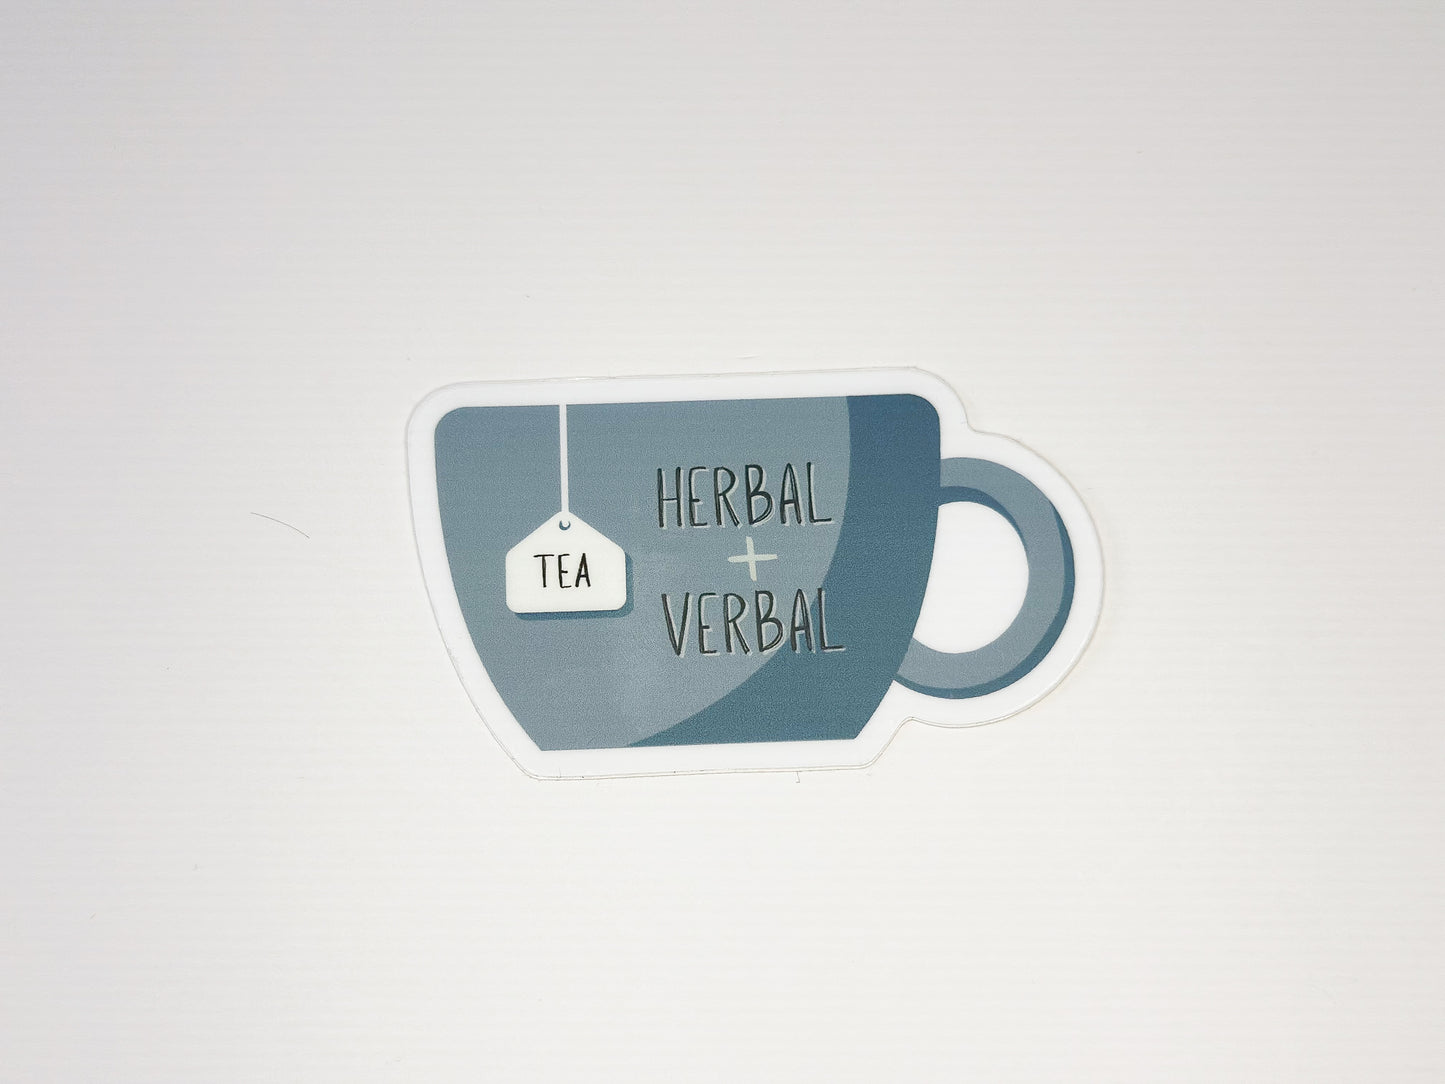 Herbal + Verbal Tea Sticker